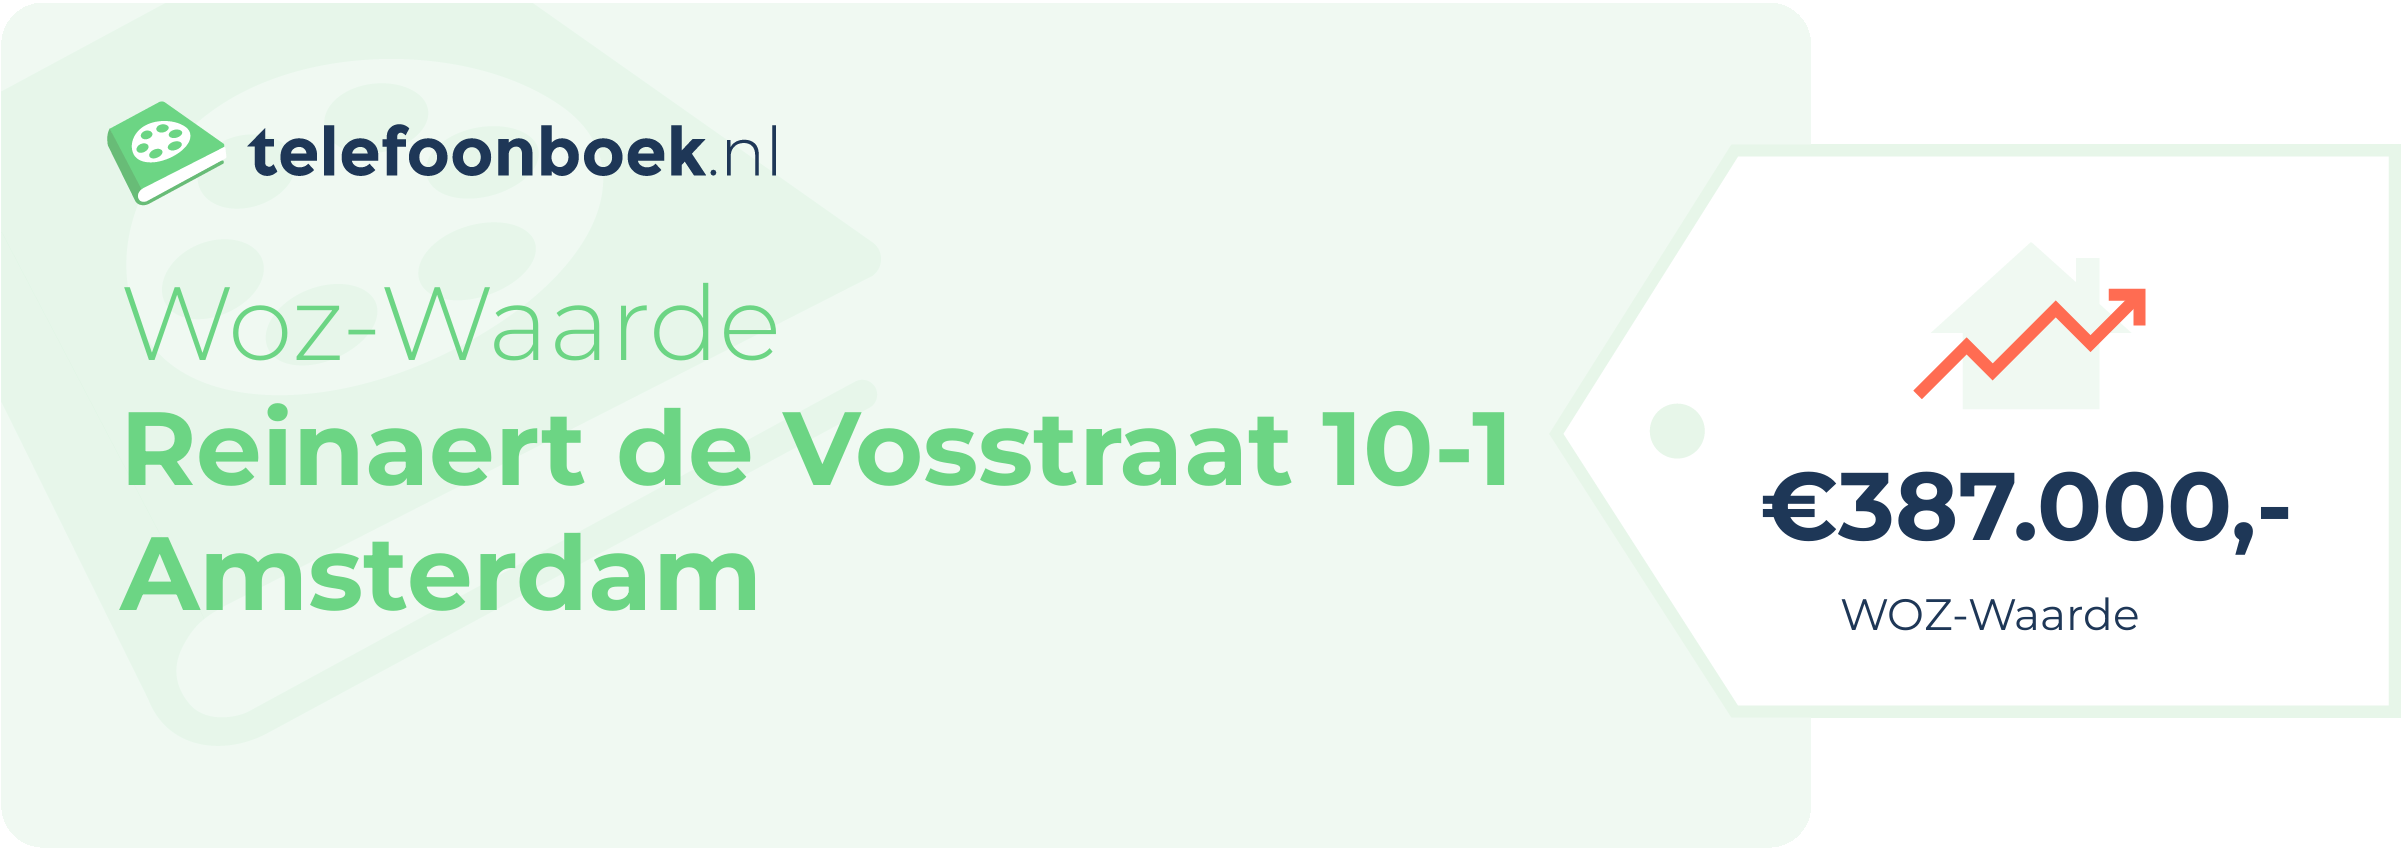 WOZ-waarde Reinaert De Vosstraat 10-1 Amsterdam